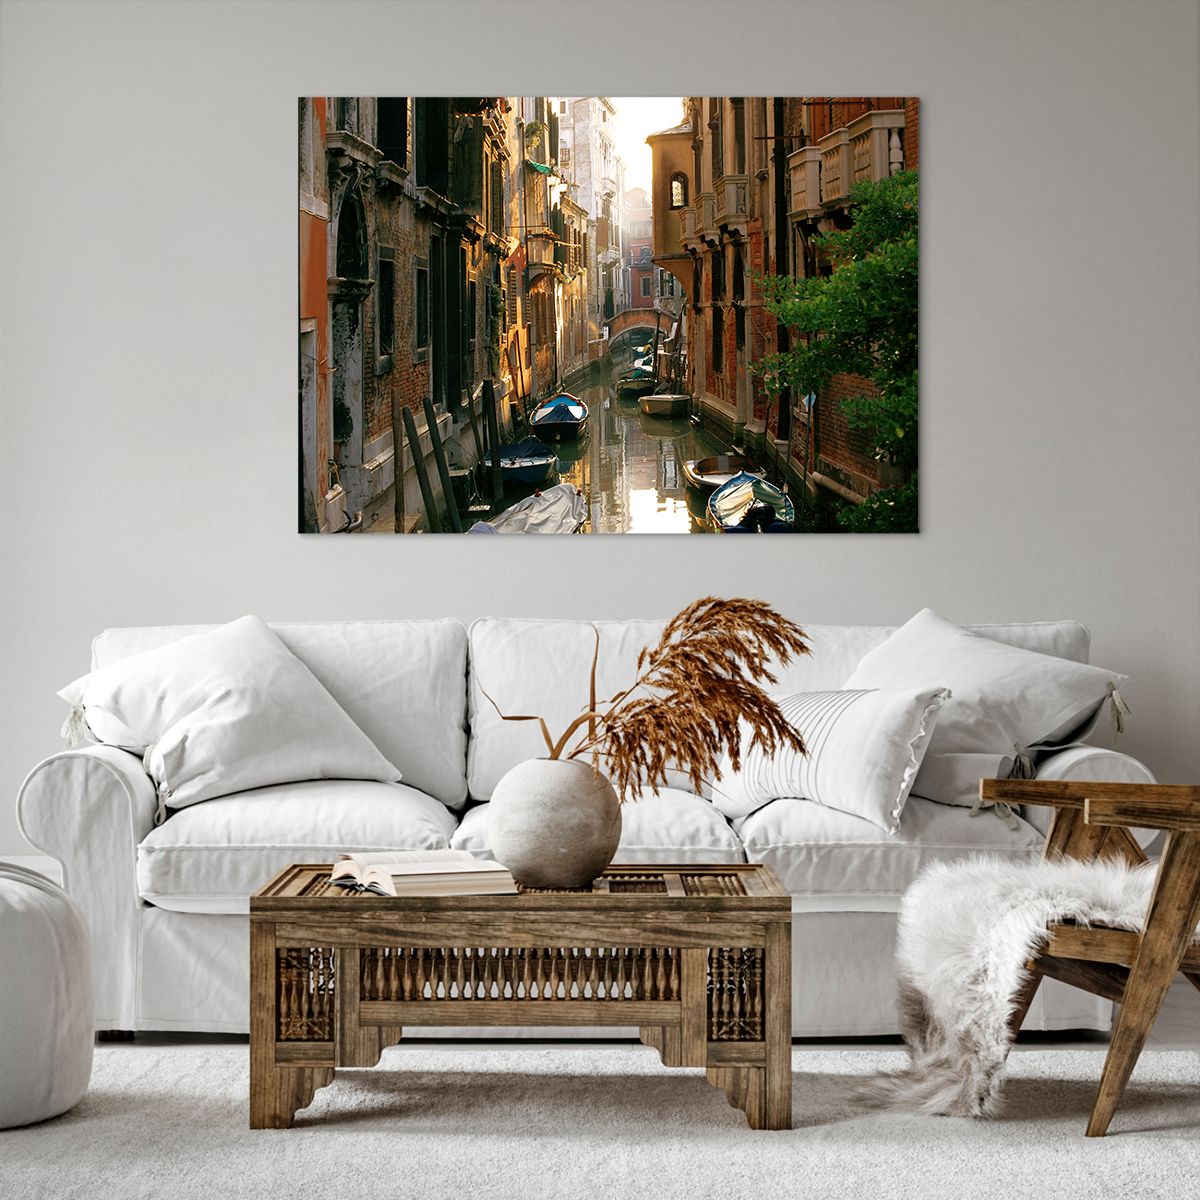 Impression sur toile Paysage, Impression sur toile Architecture, Impression sur toile Venise, Impression sur toile Canal Vénitien, Impression sur toile Italie